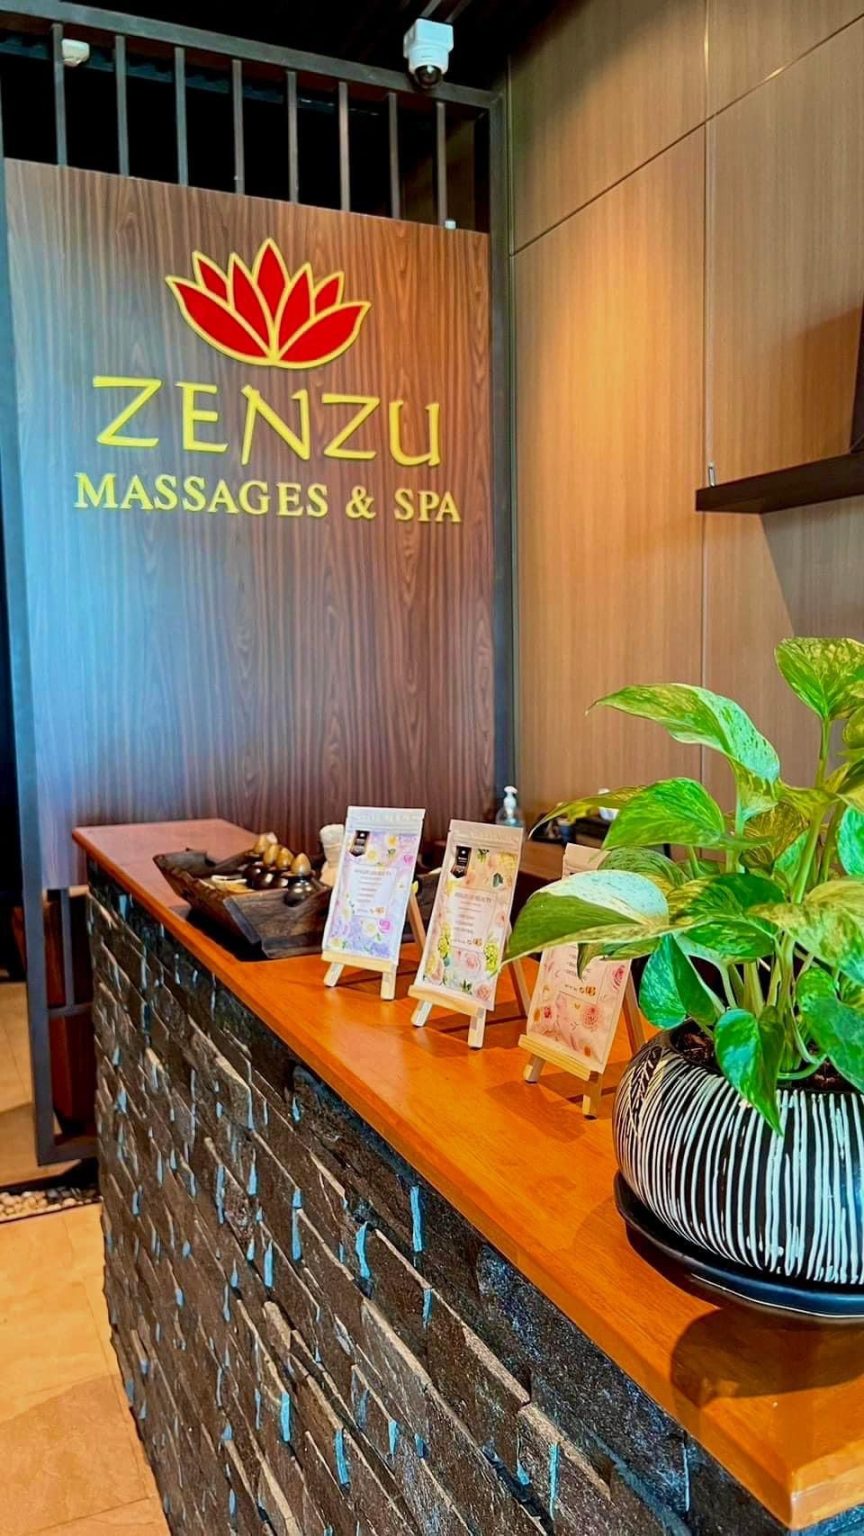 Zenzu Massages & Spa | Chonburi Thailand | Pattana Resort